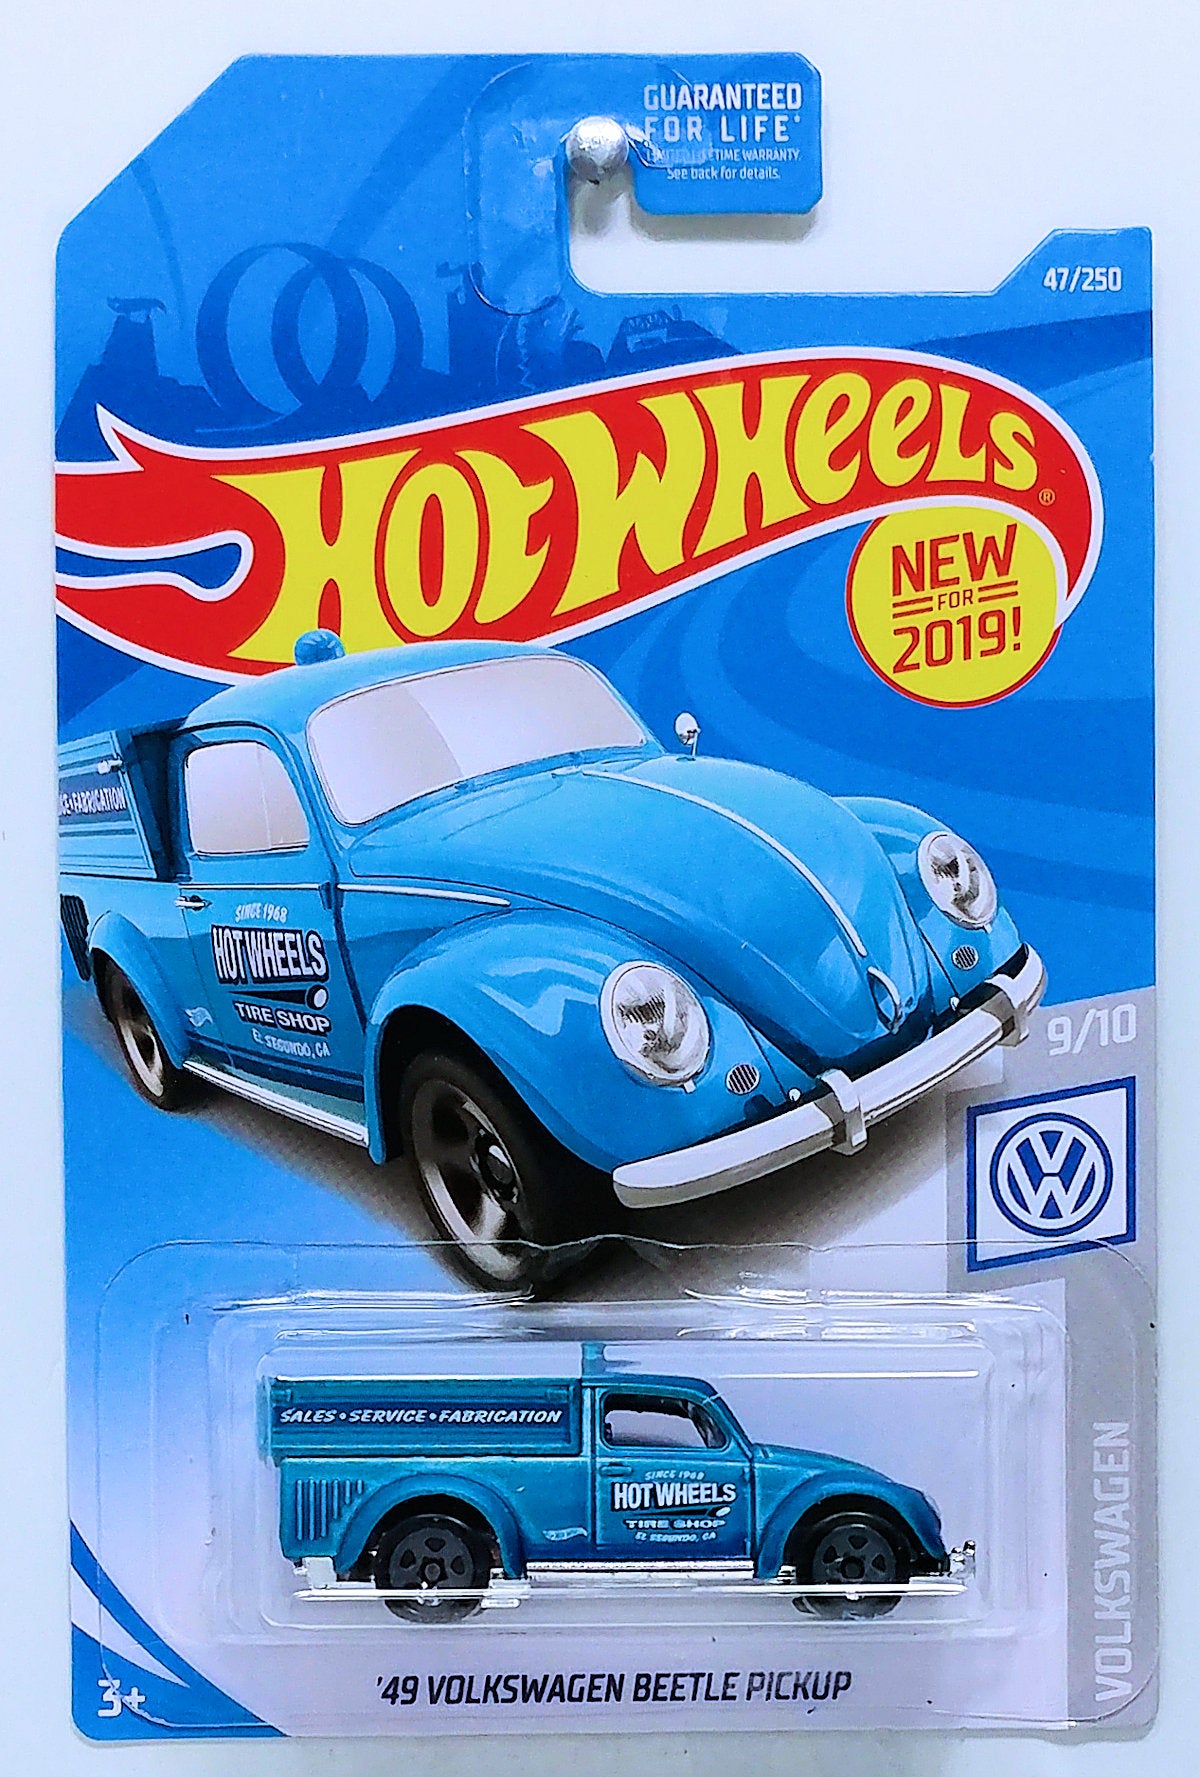 Hot Wheels 2019 - Collector # 047/250 - Volkswagen 9/10 - New Models - '49 Volkswagen Beetle Pickup - Satin Blue - USA